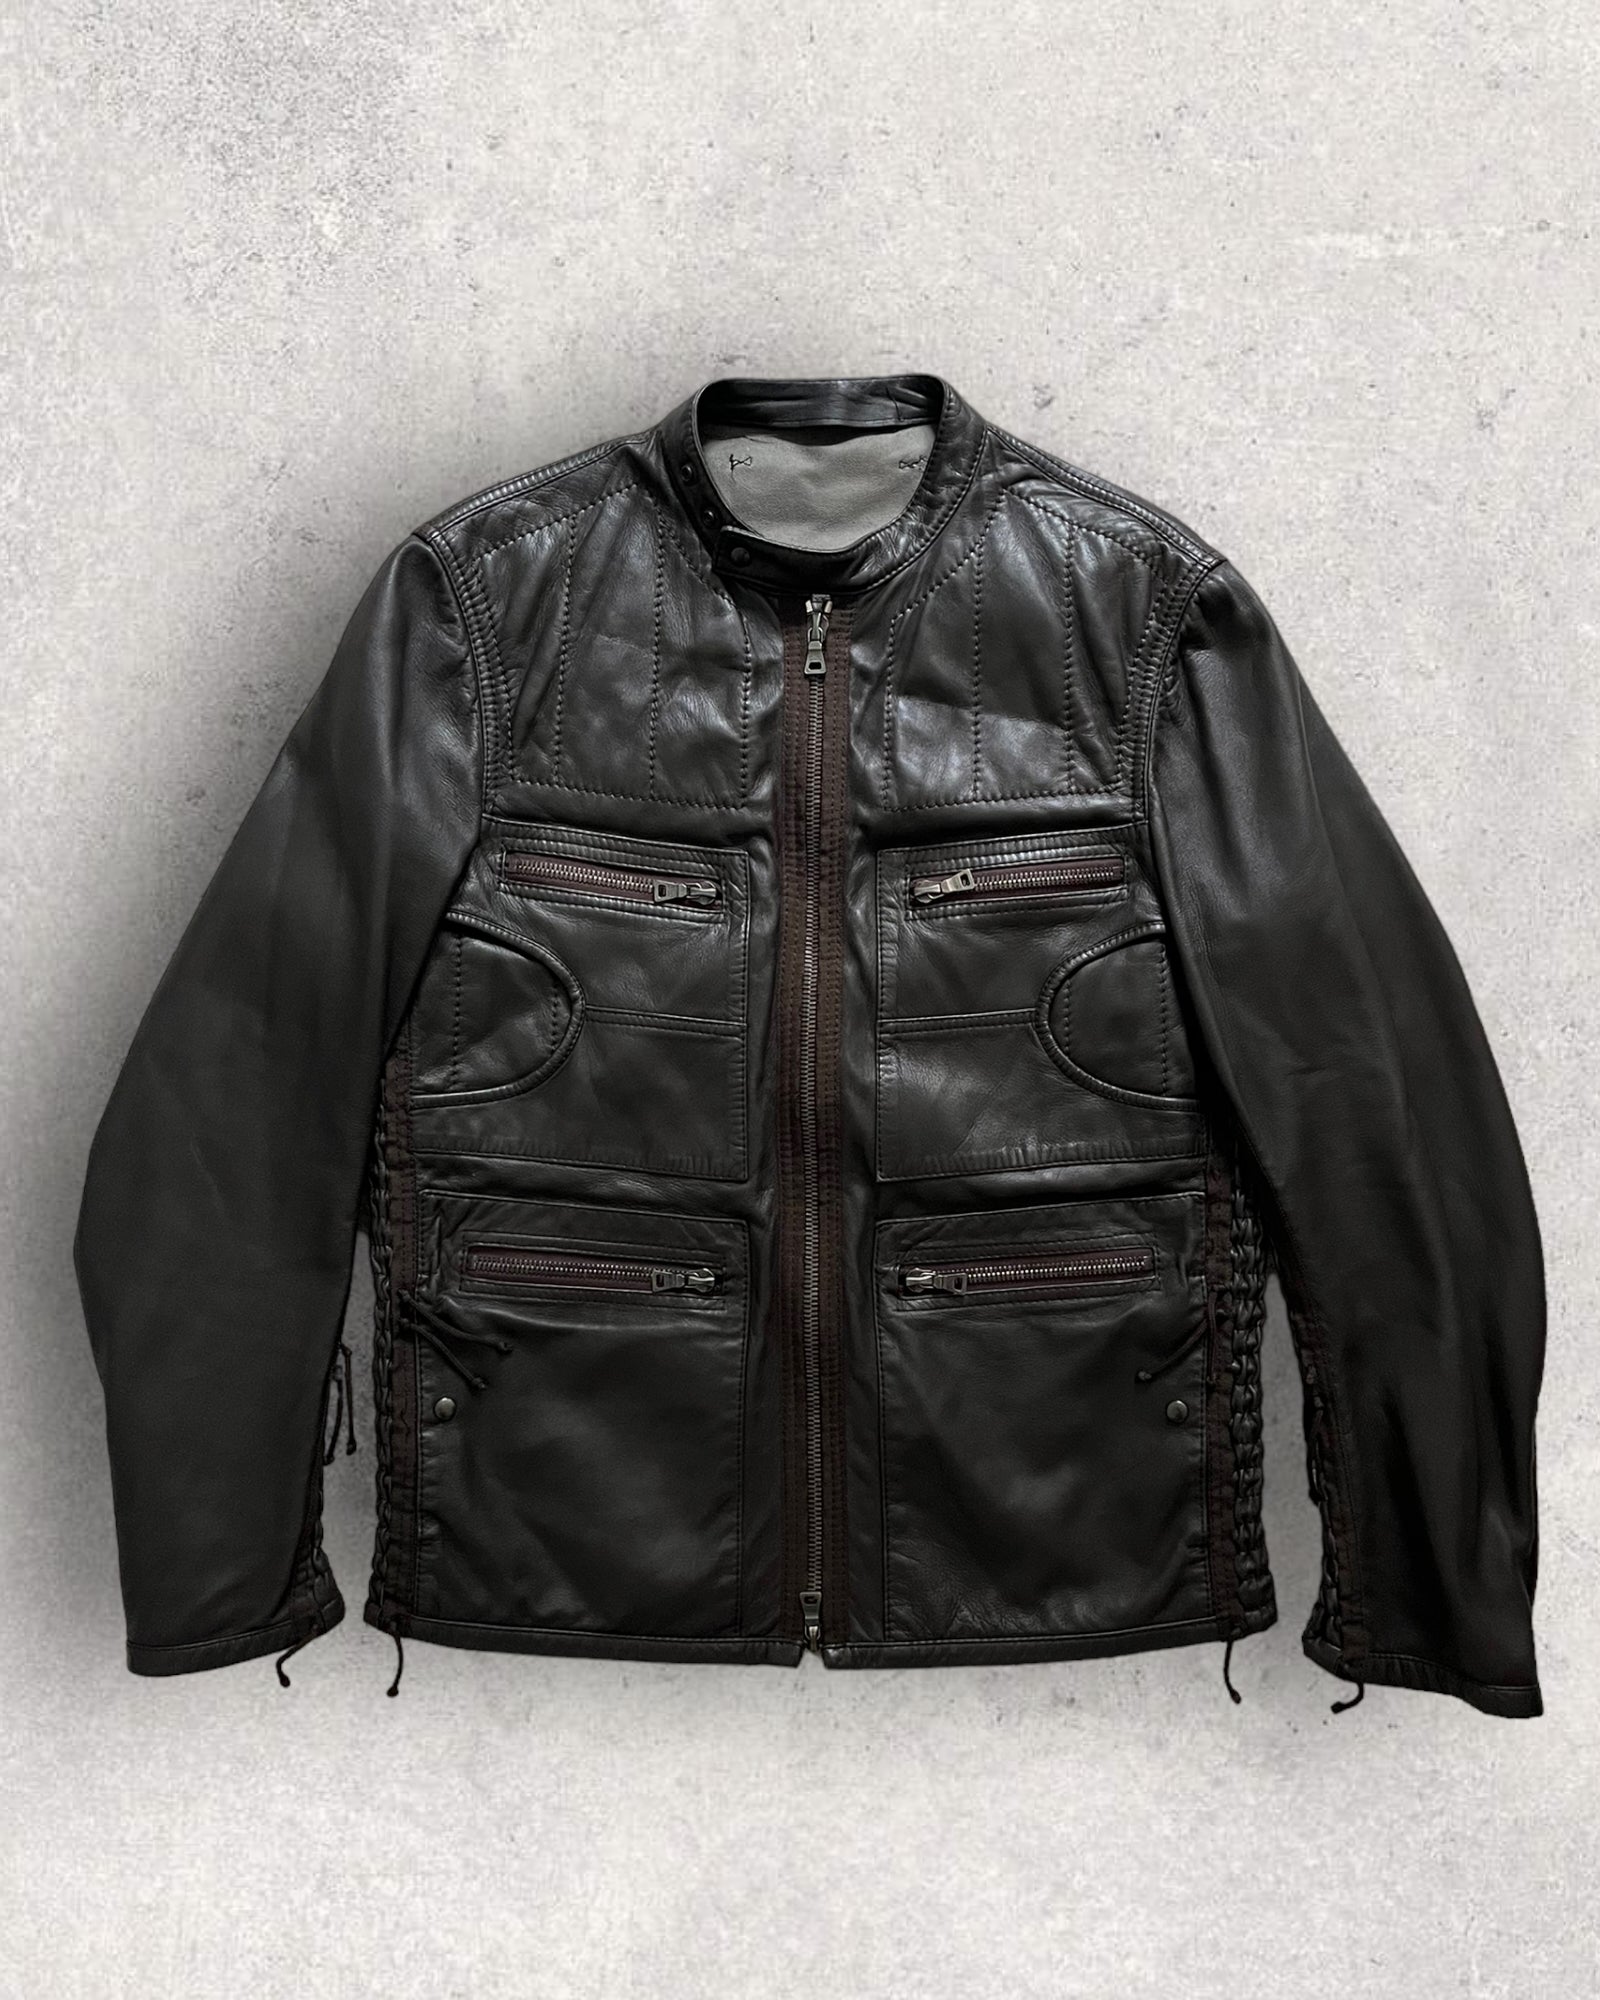 こちらは2000年代のPPRADA 00s no collar BLACK leather jacket